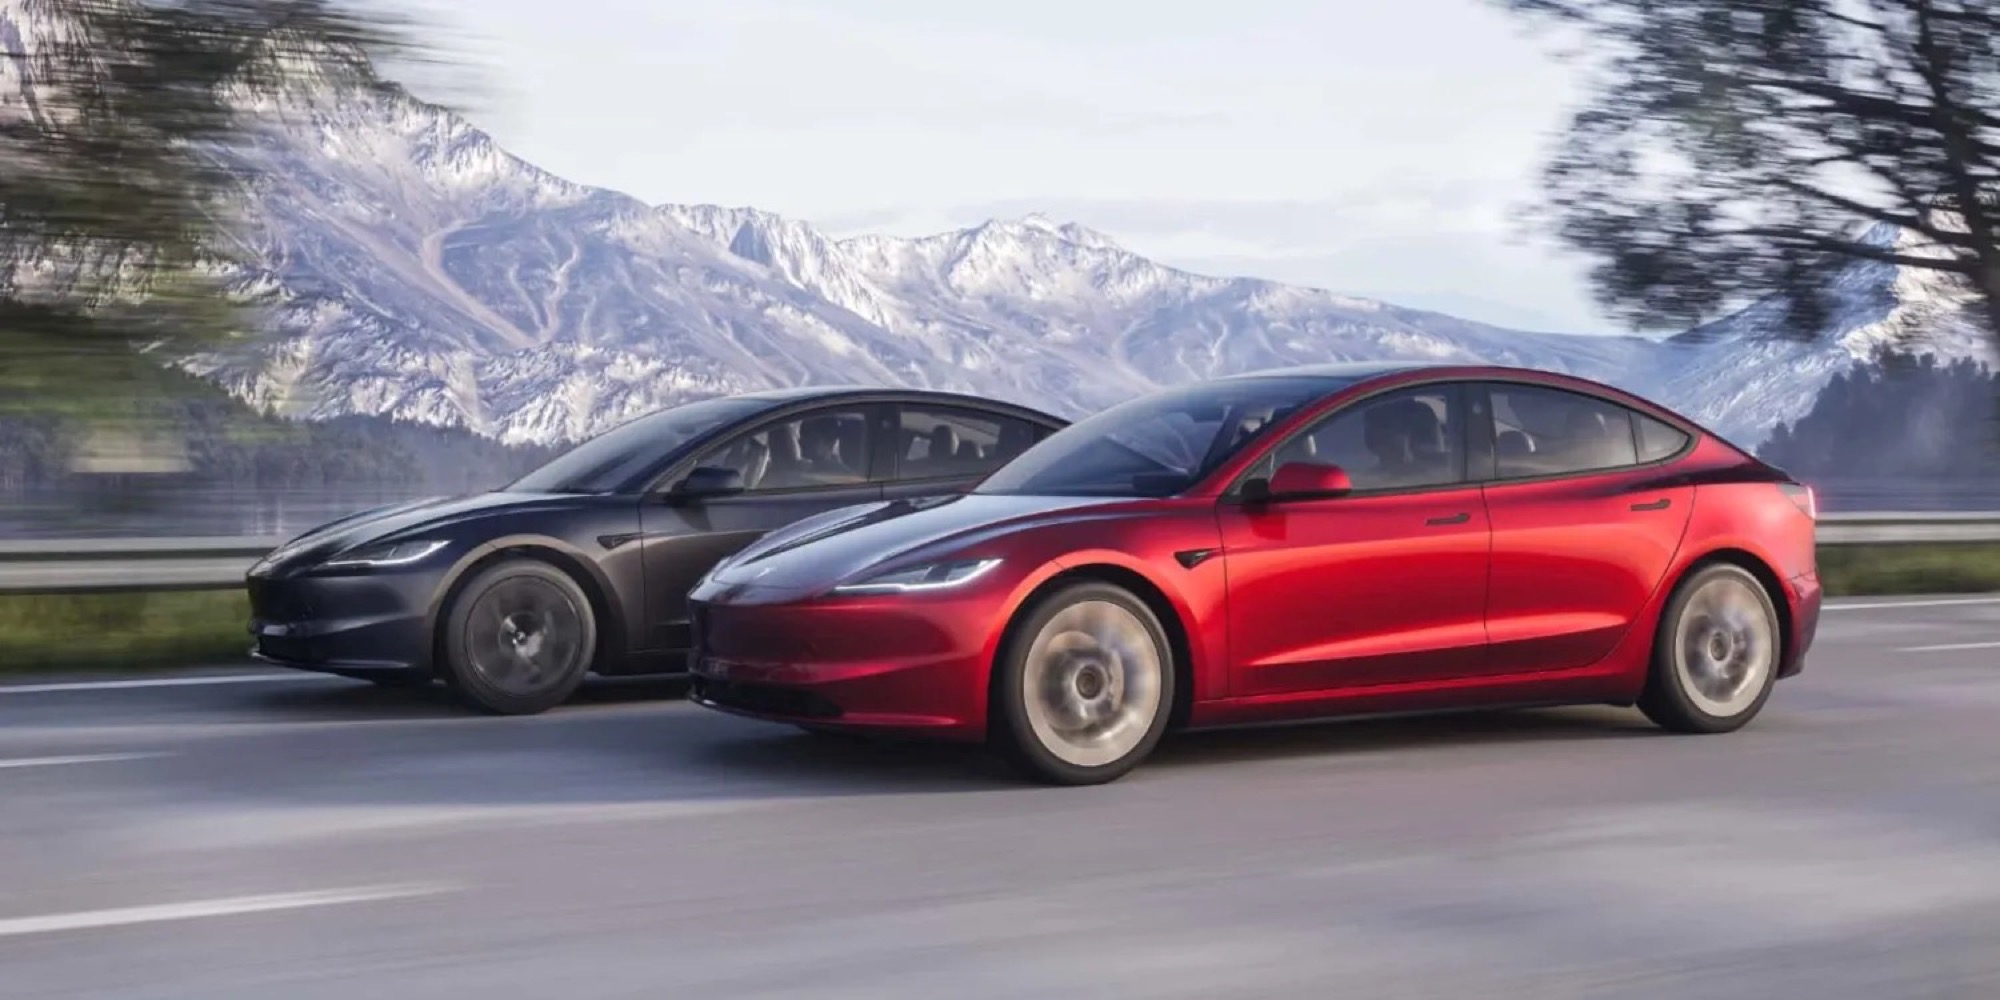 Tesla svela la nuova Model 3, soprannominata Project Highland: ecco tutte le novità